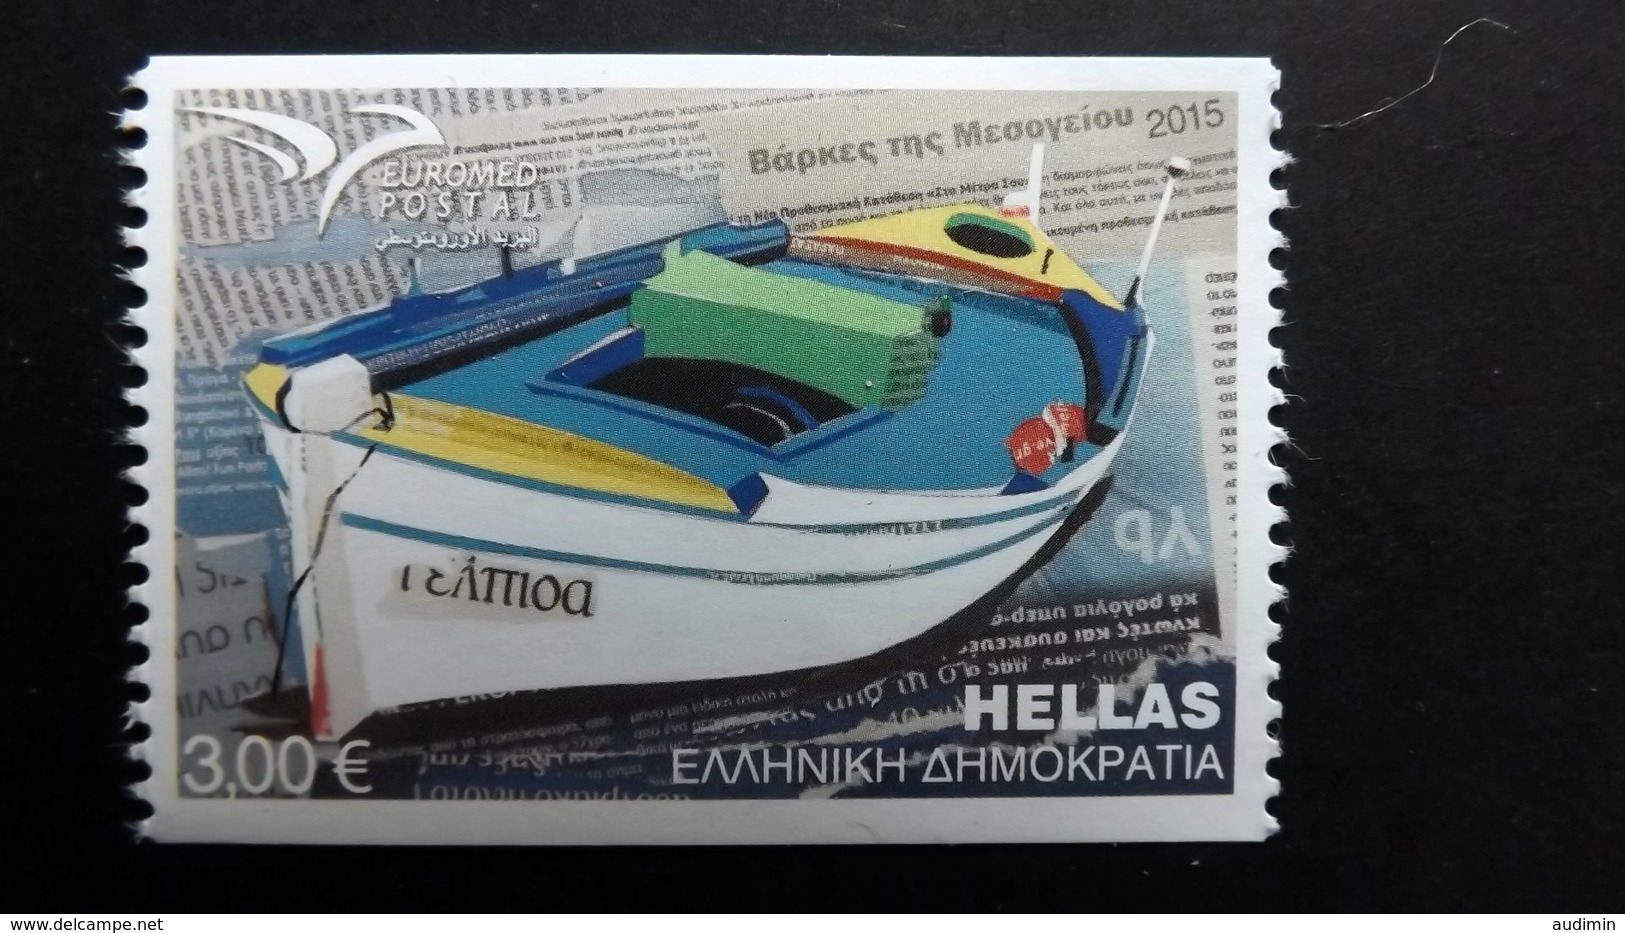 Griechenland 2846 C **/mnh, Euromed Postal: Schiffe - Ongebruikt